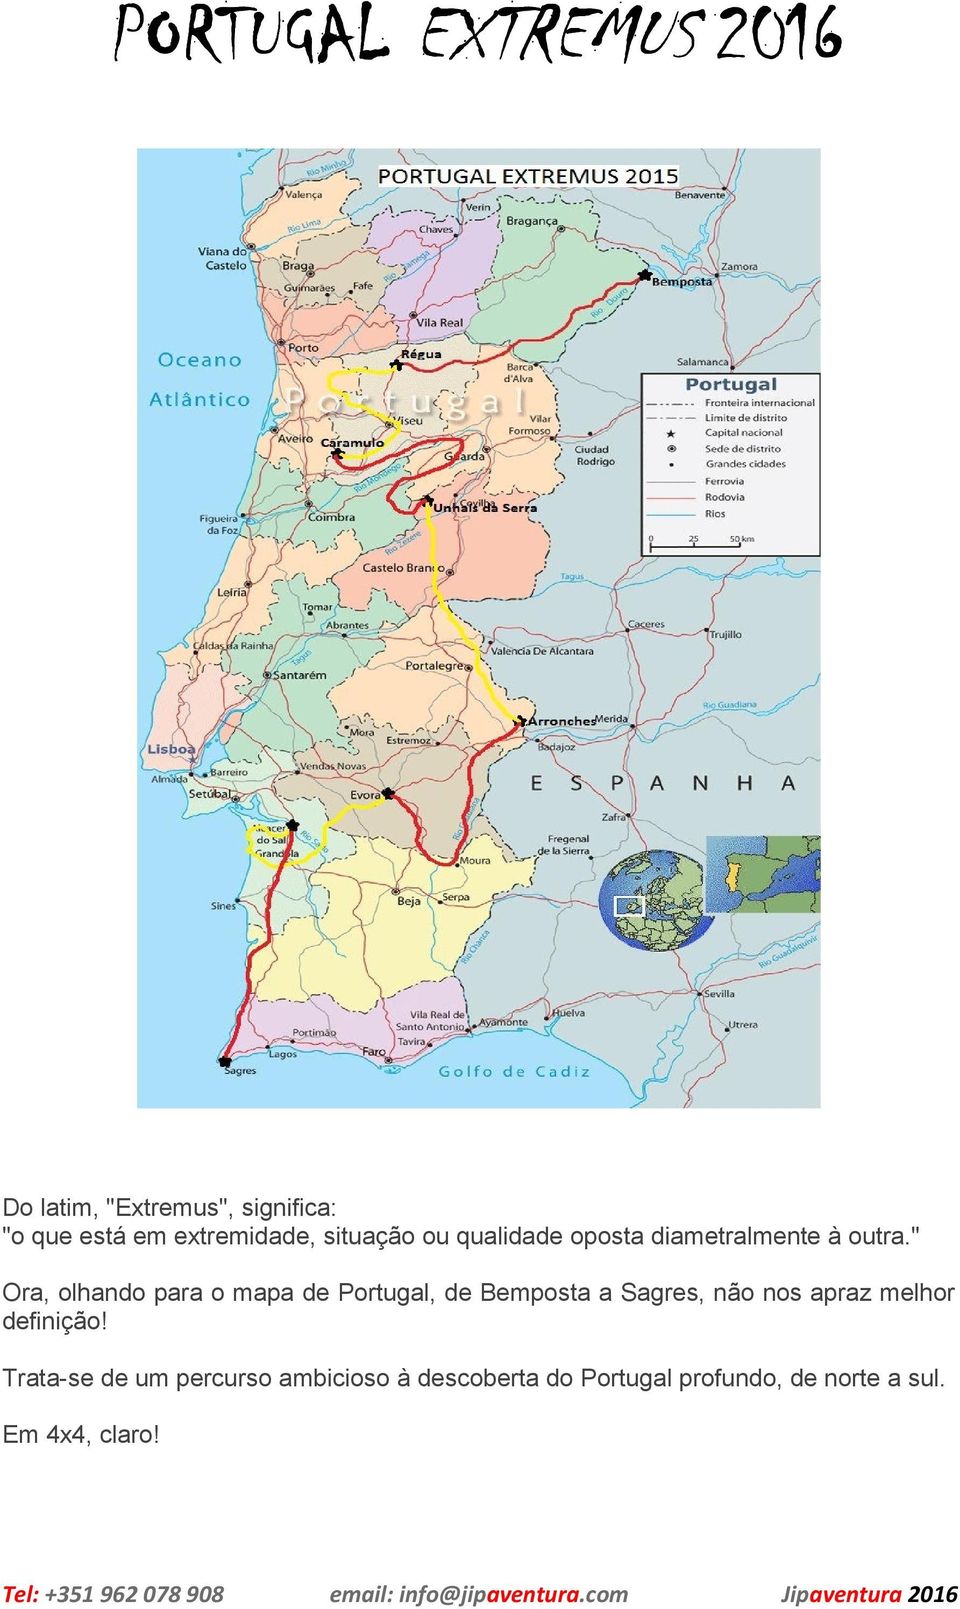 " Ora, olhando para o mapa de Portugal, de Bemposta a Sagres, não nos apraz melhor